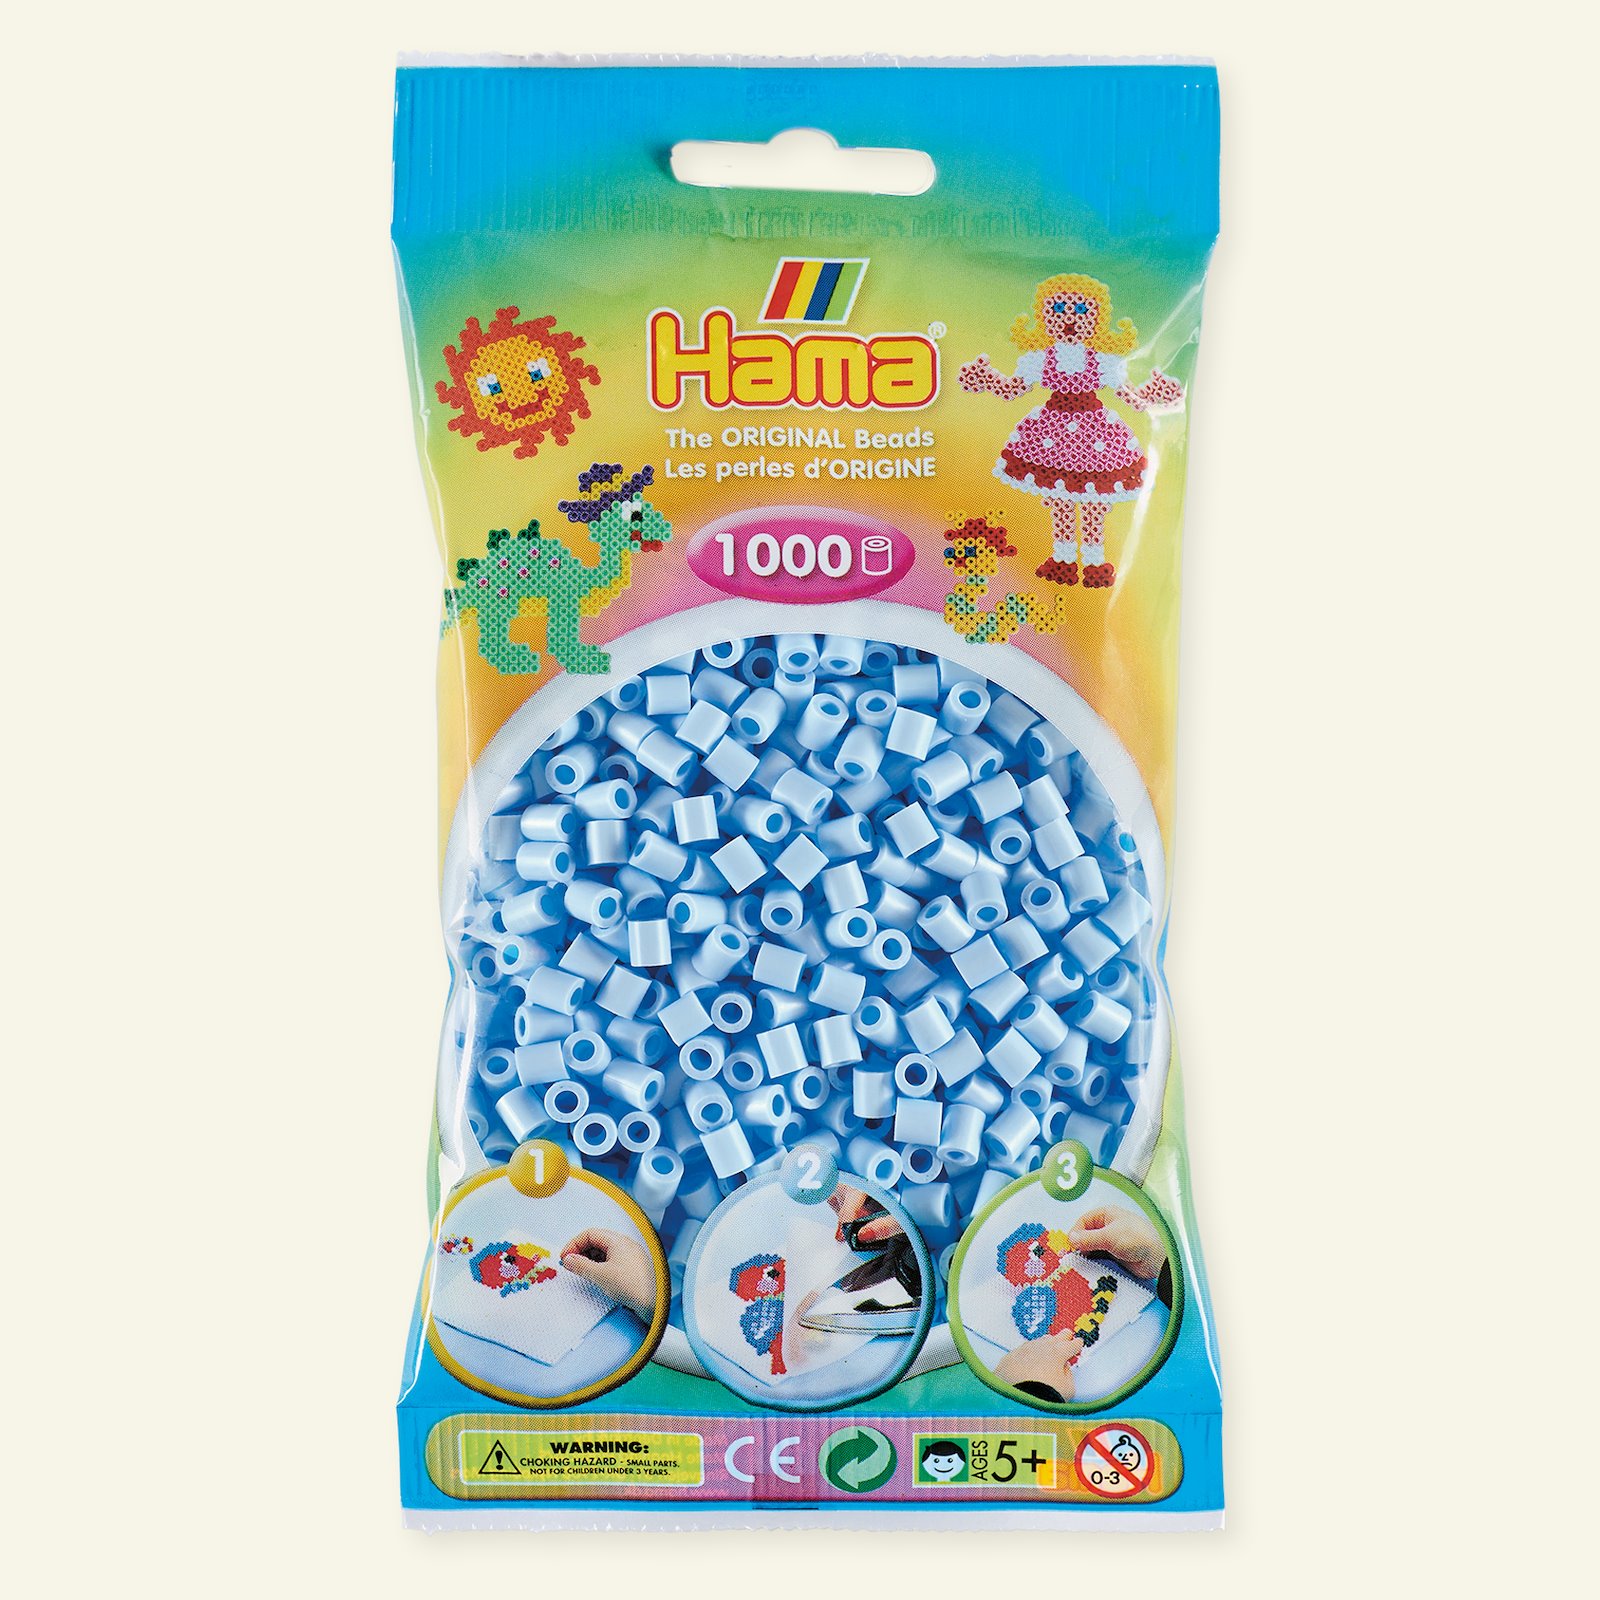 HAMA midi pärla, 1000 st, pastell isblå 28360_pack